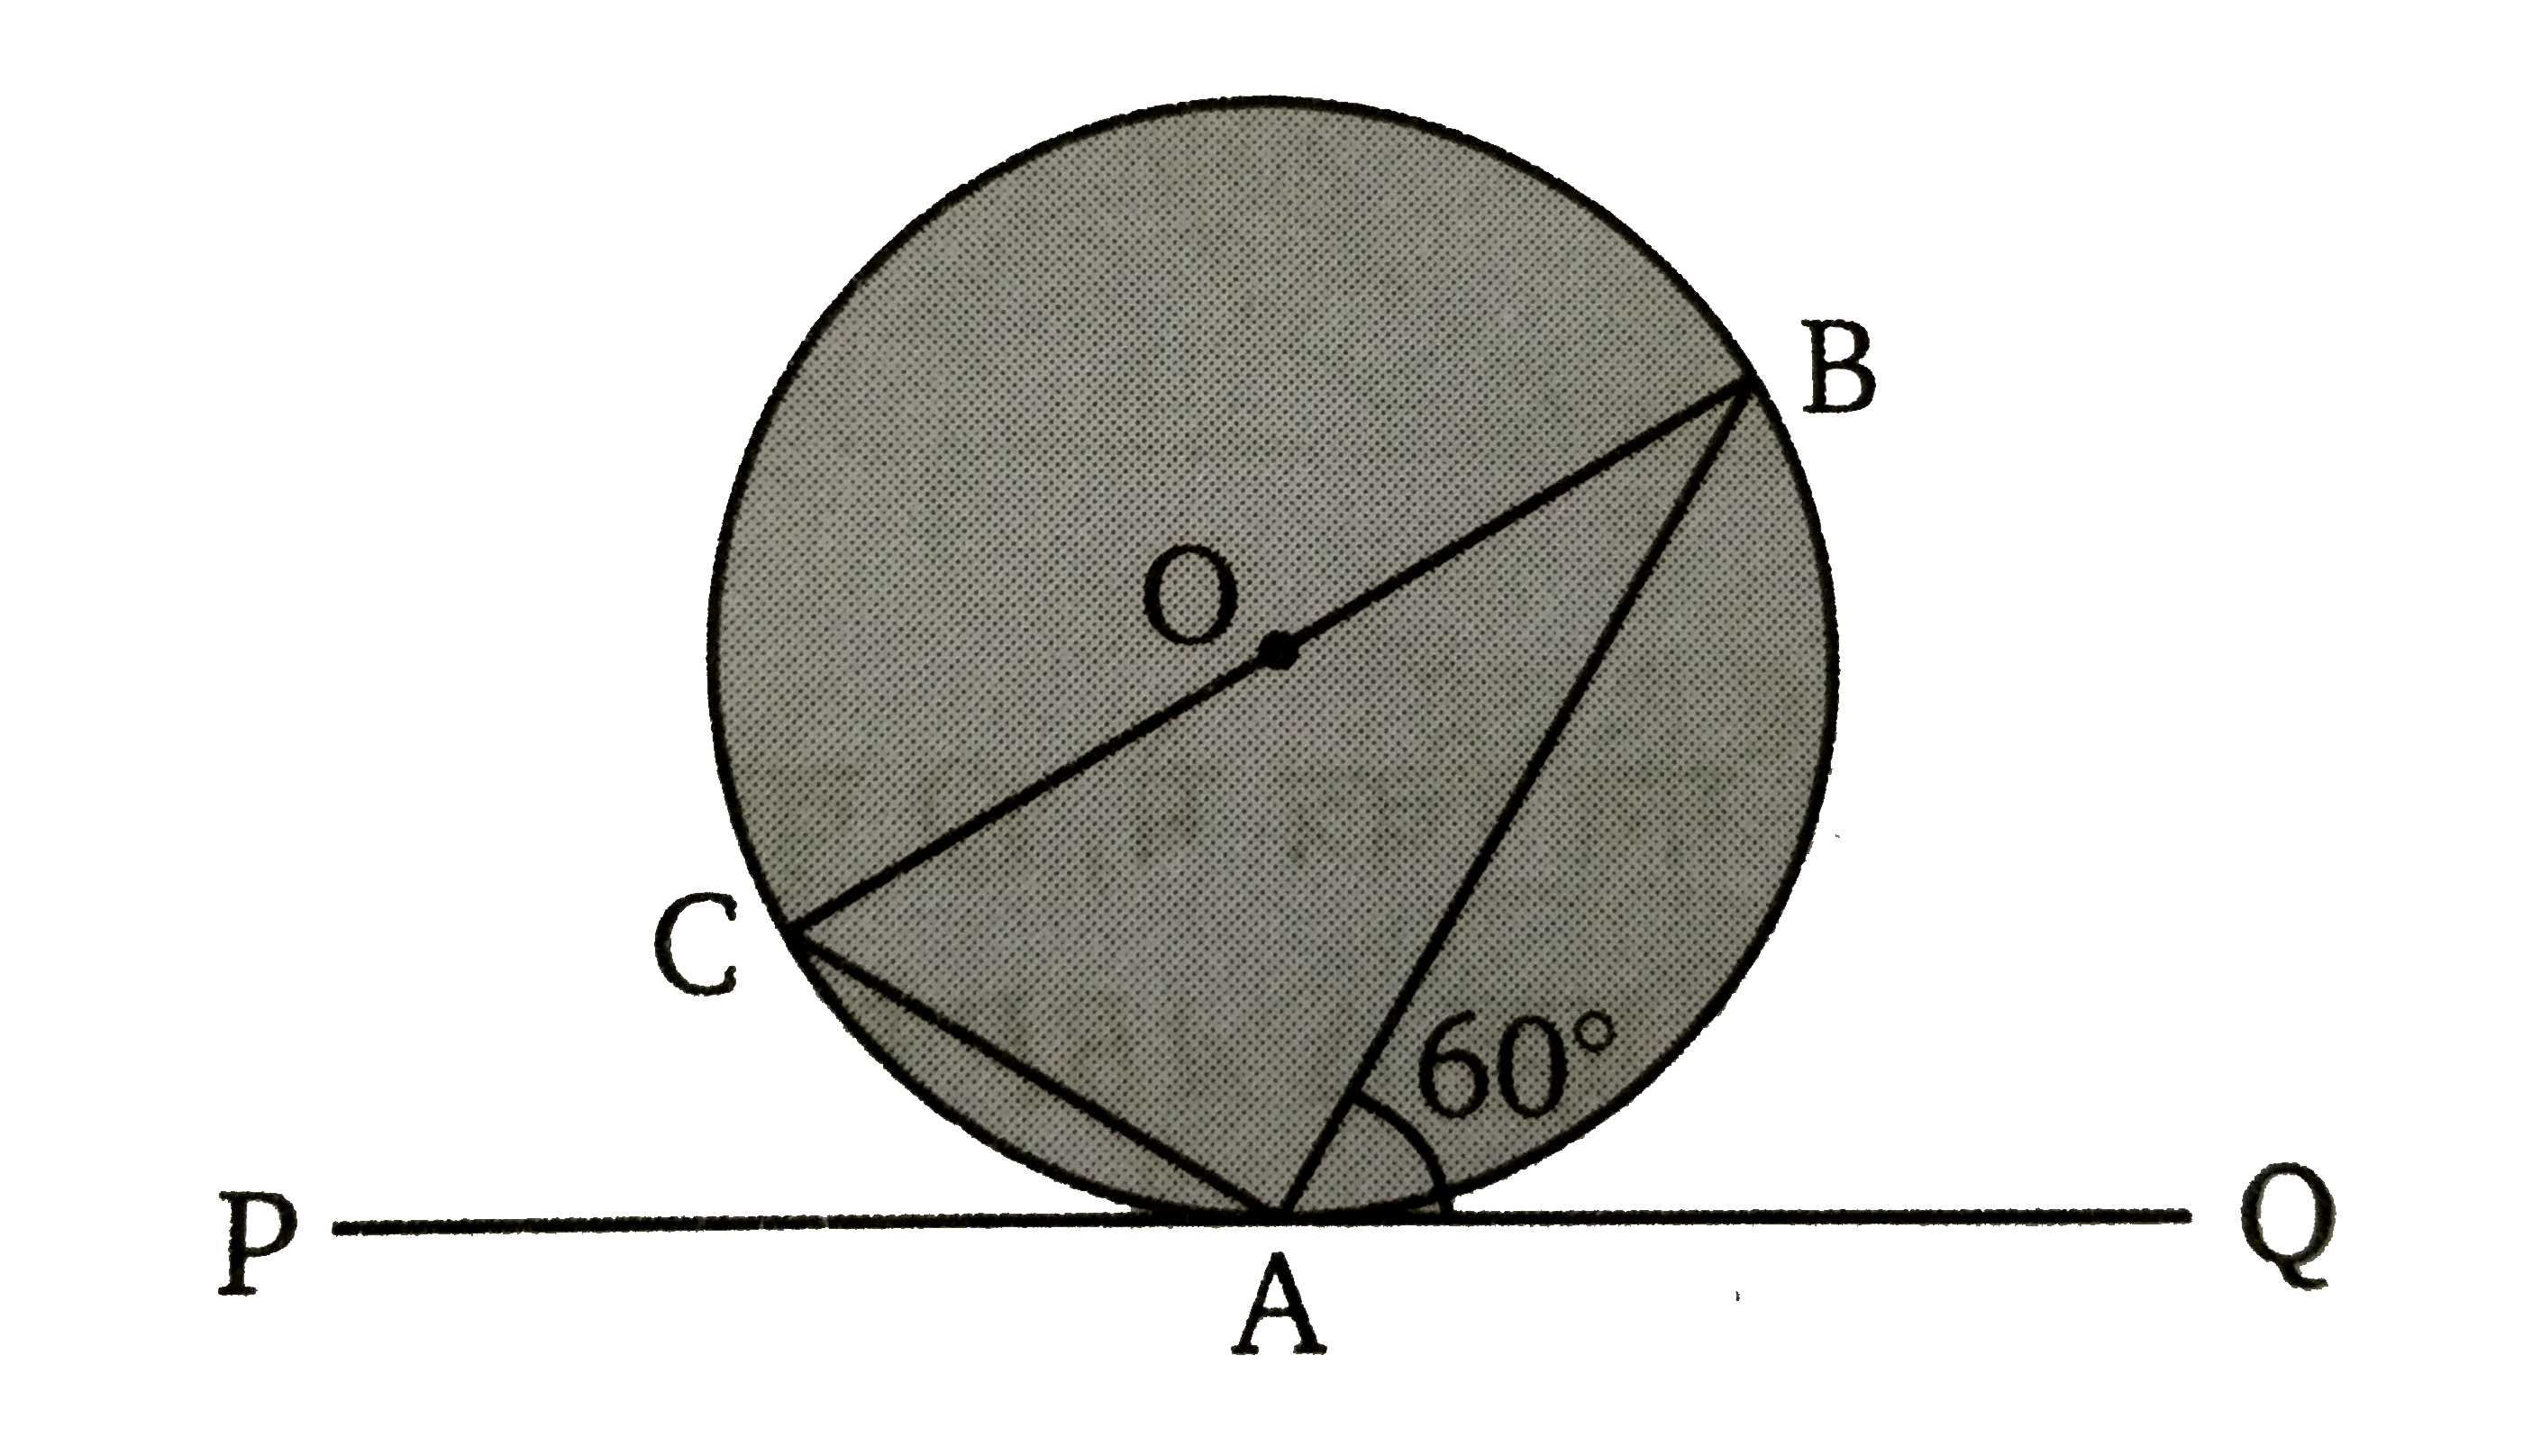 दिये गए चित्र में O केन्द्र वाले एक वृत्त के बिन्दु A पर PAQ एक स्पर्शी है तथा angle BAQ = 60^(@)  तब angleABC का मान ज्ञात कीजिए ।